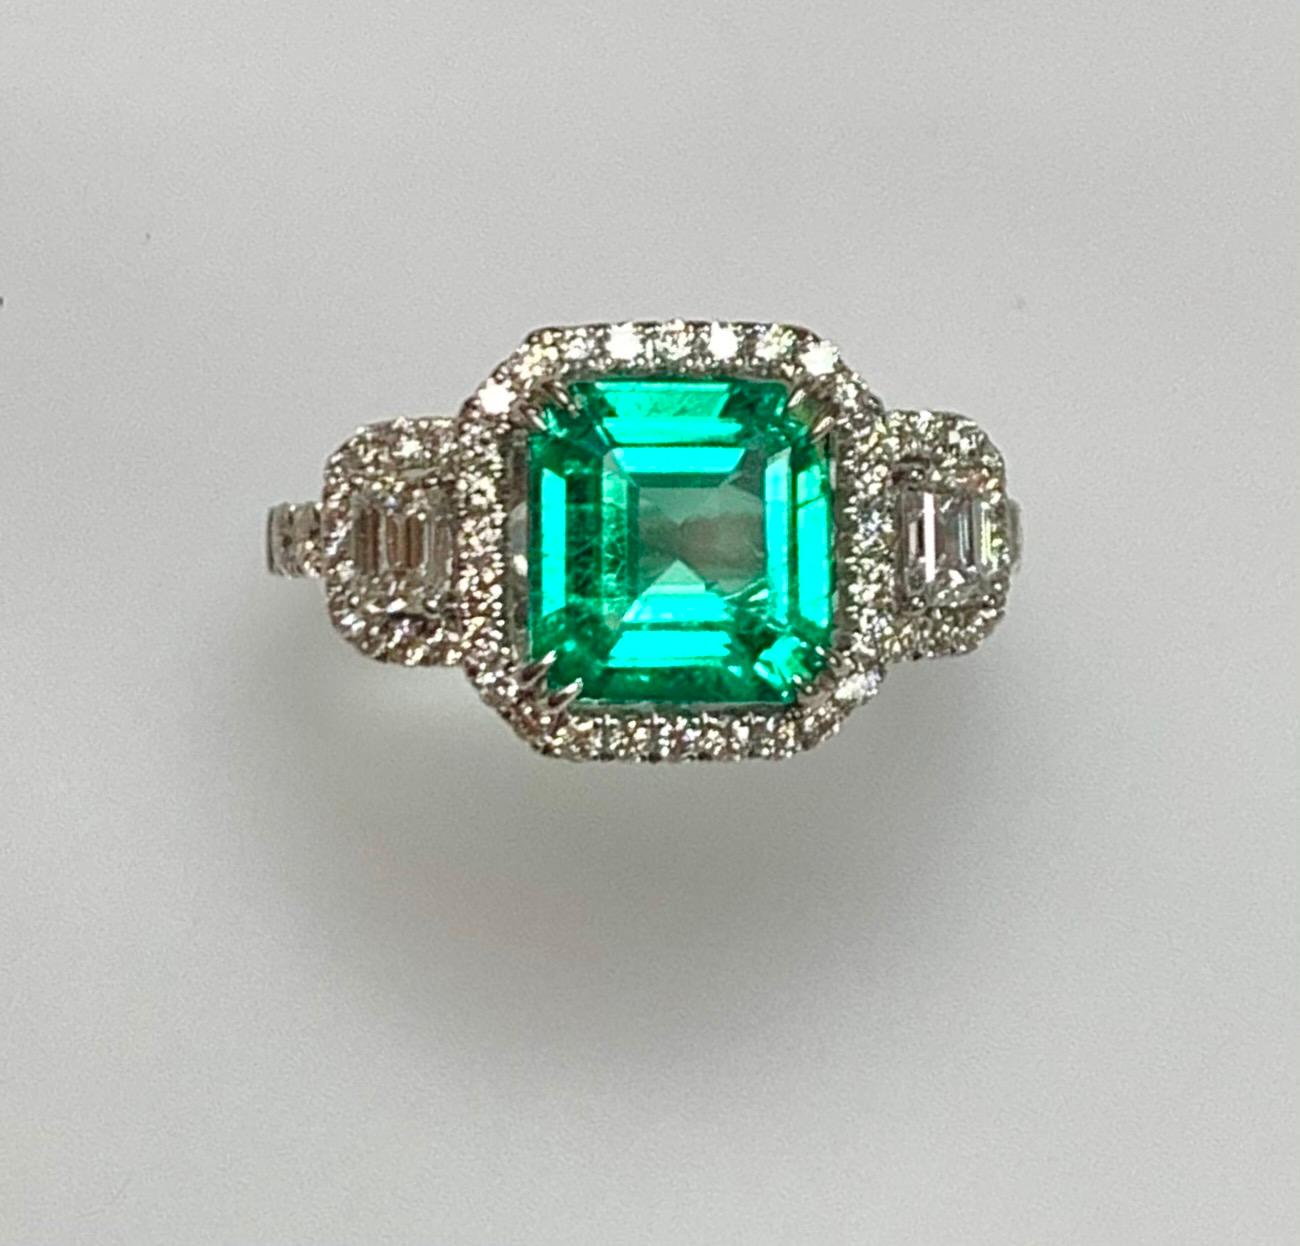 1.75 carat emerald cut diamond